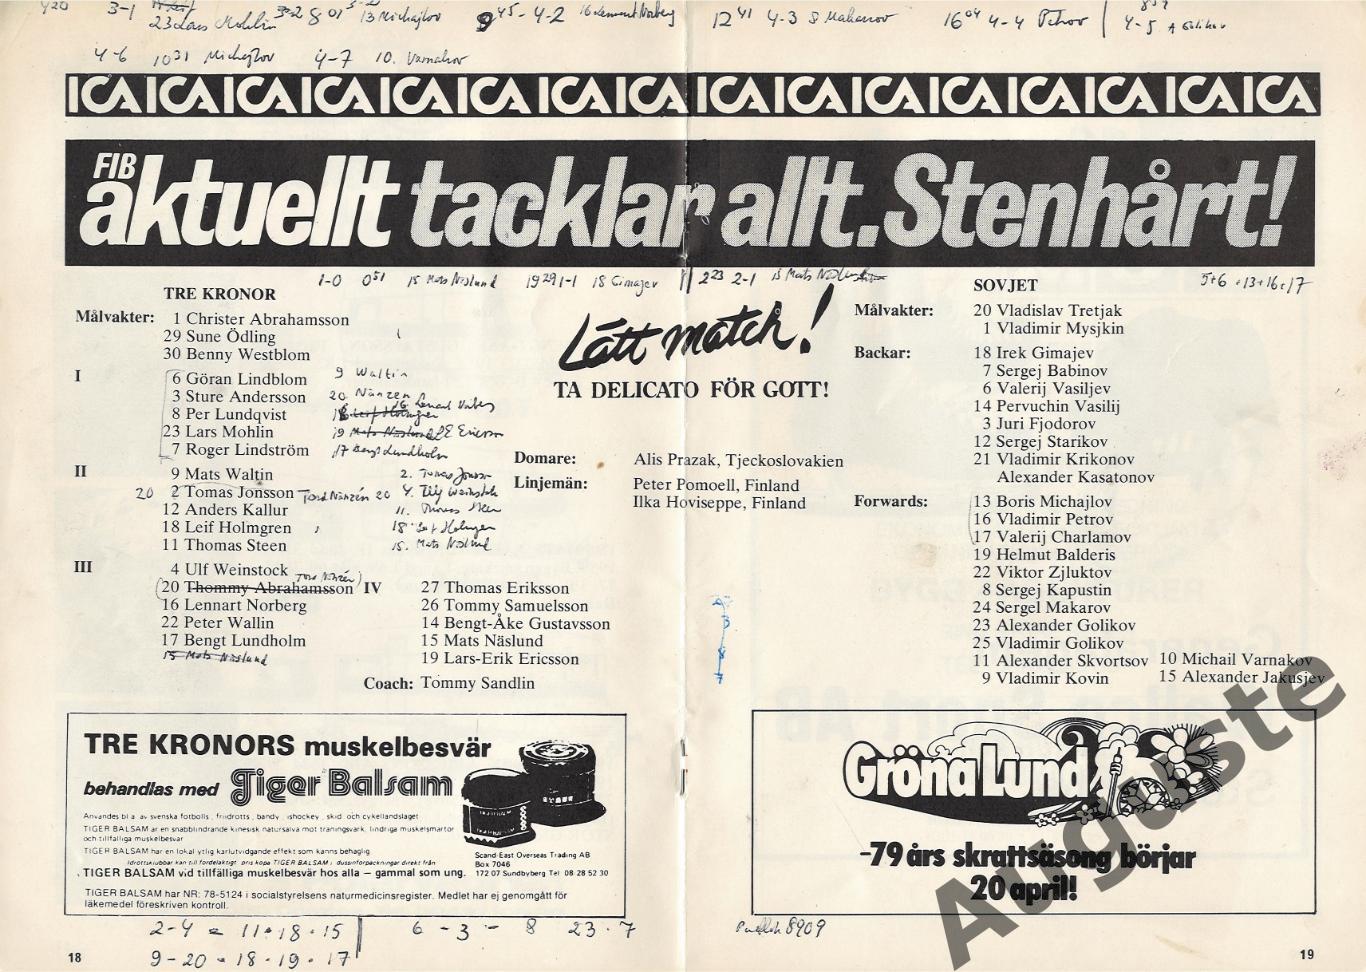 Швеция - СССР 1 и 2 апреля 1979. Стокгольм. Товарищеские матчи. 1